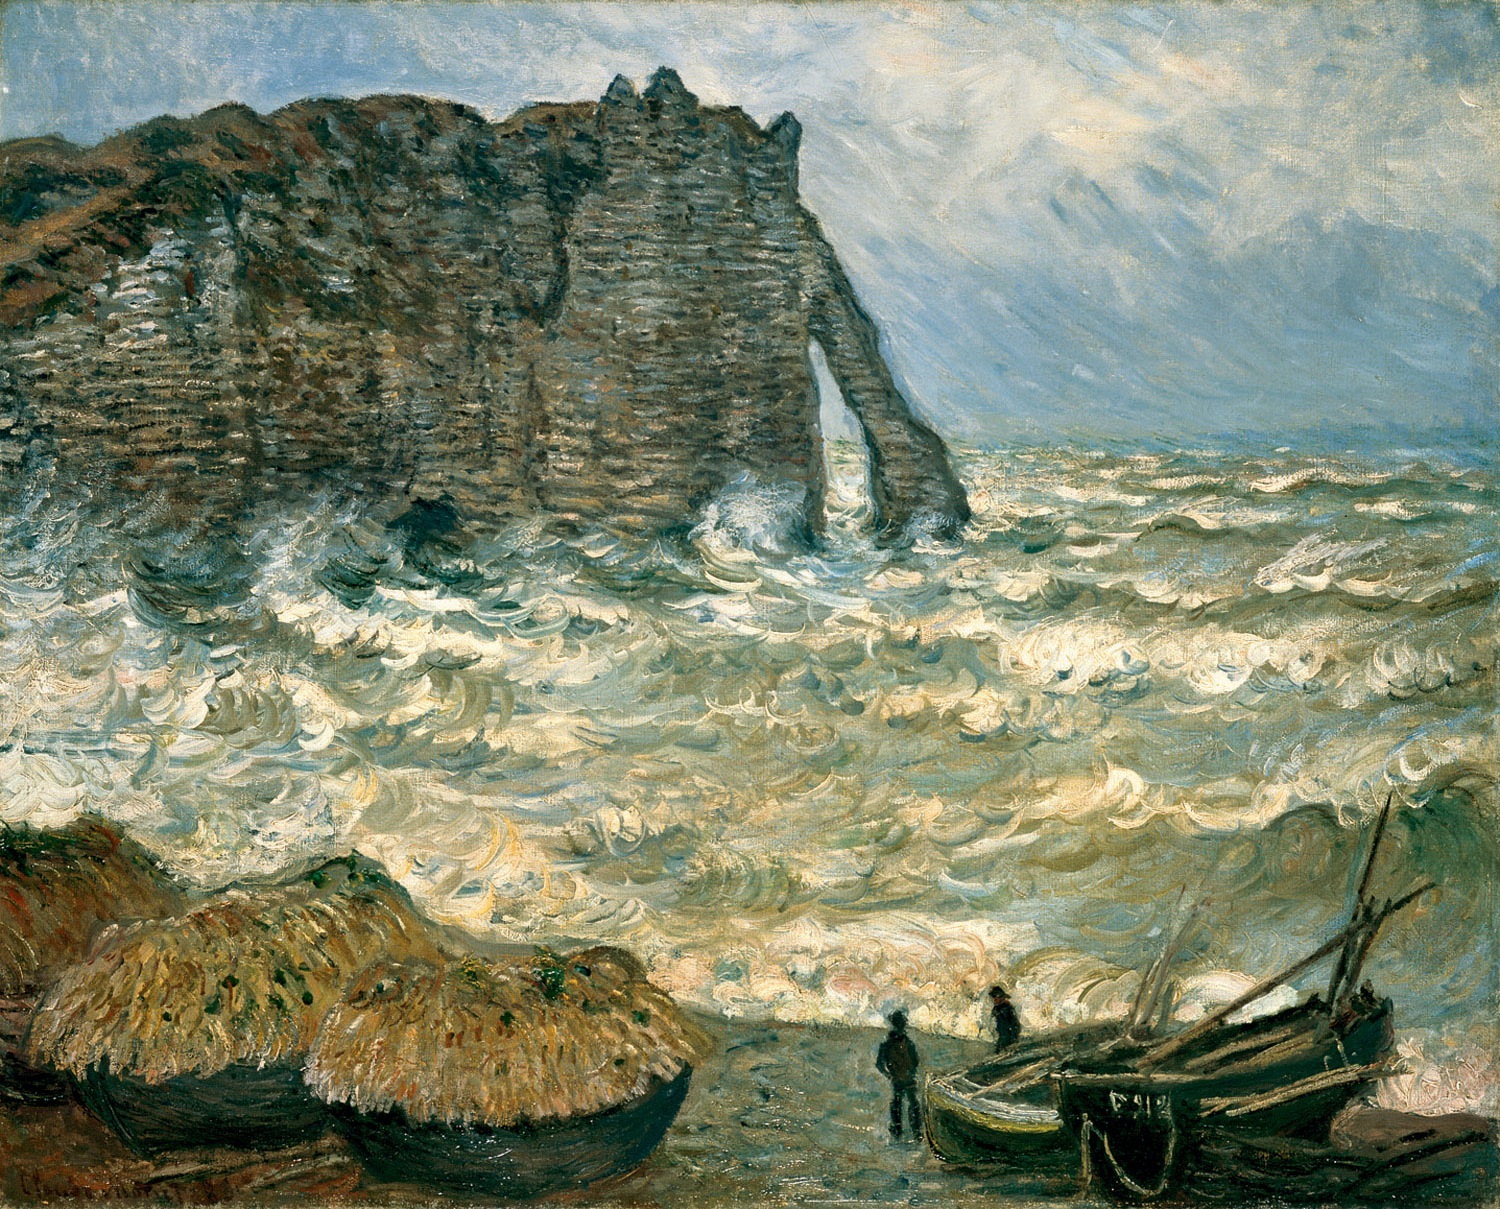 Etretat'da Hırçın Deniz by Claude Monet - 1883 - 81x 100 cm 